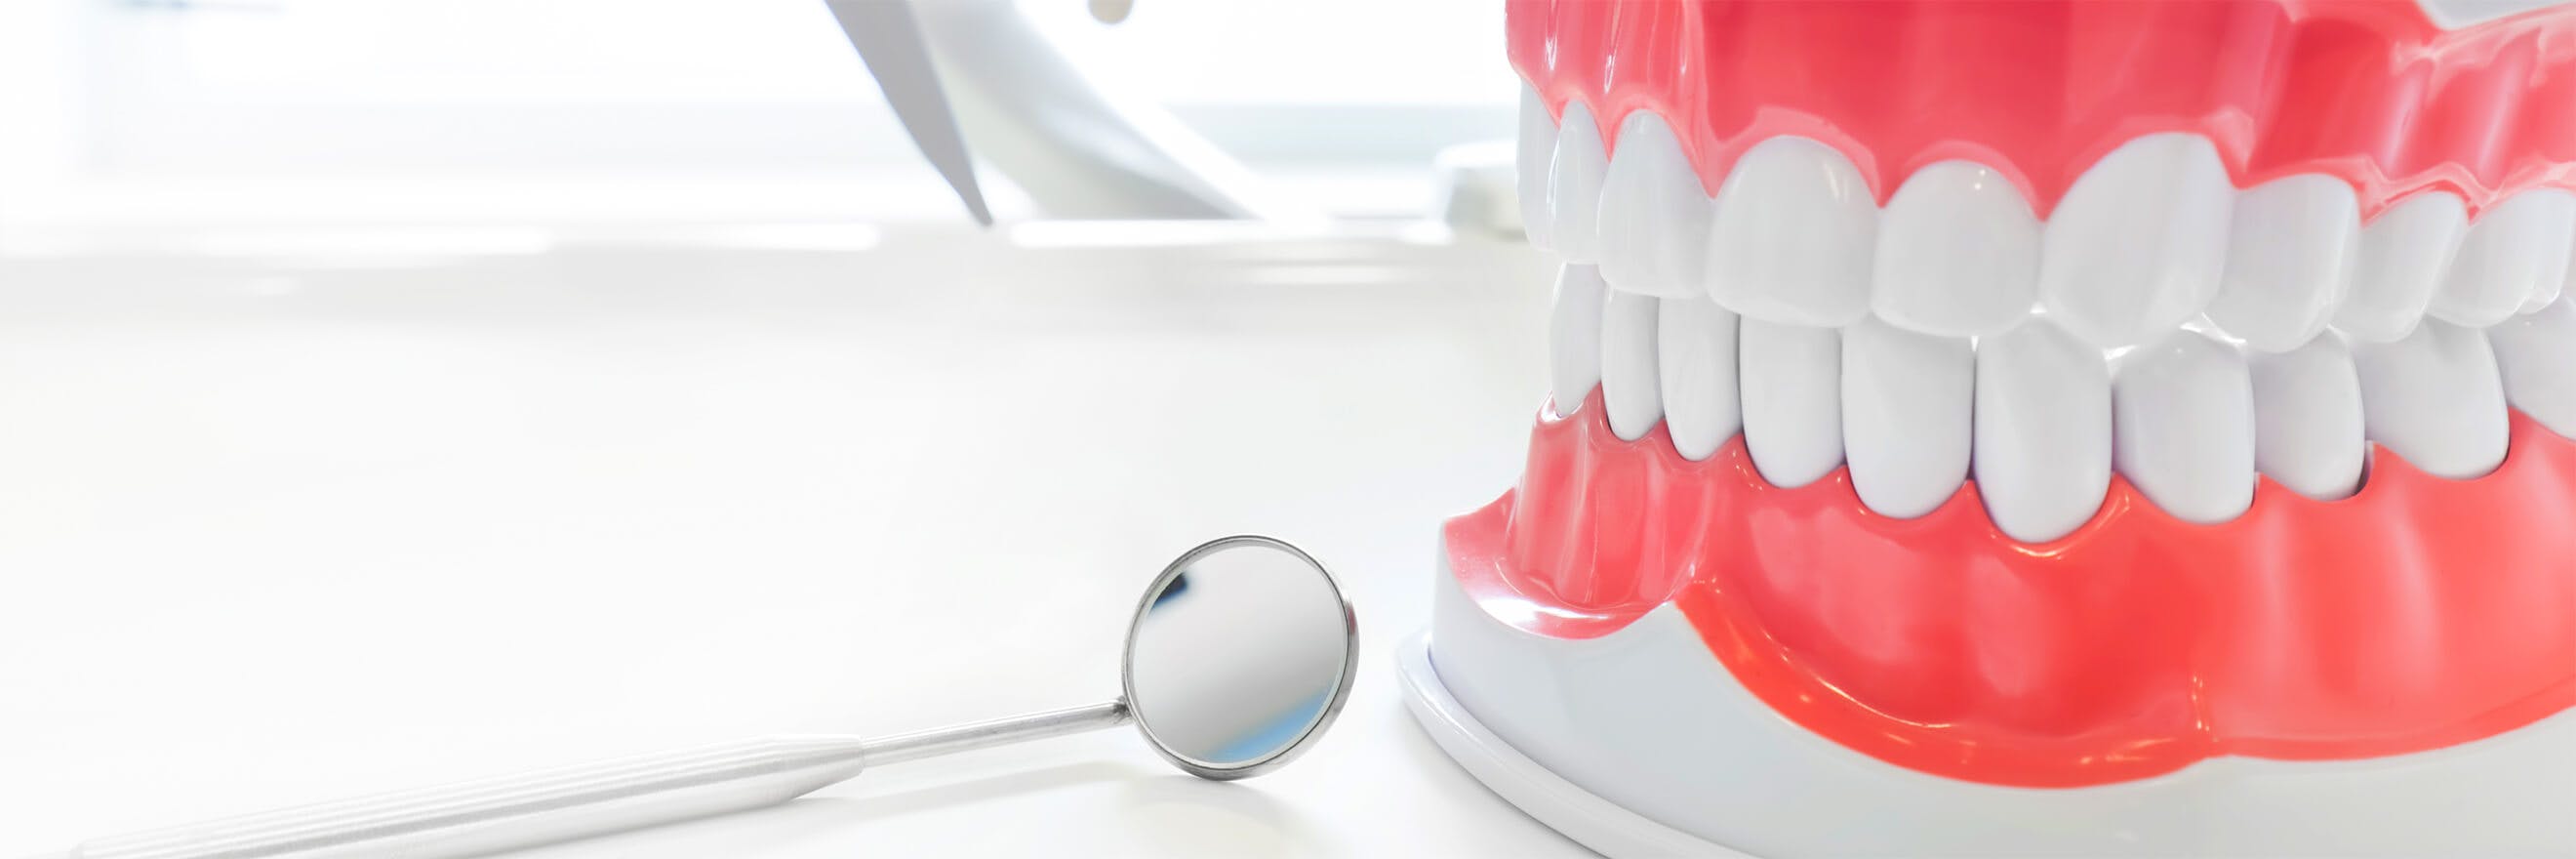 Modell på tandkäke, med en tandläkarspegel